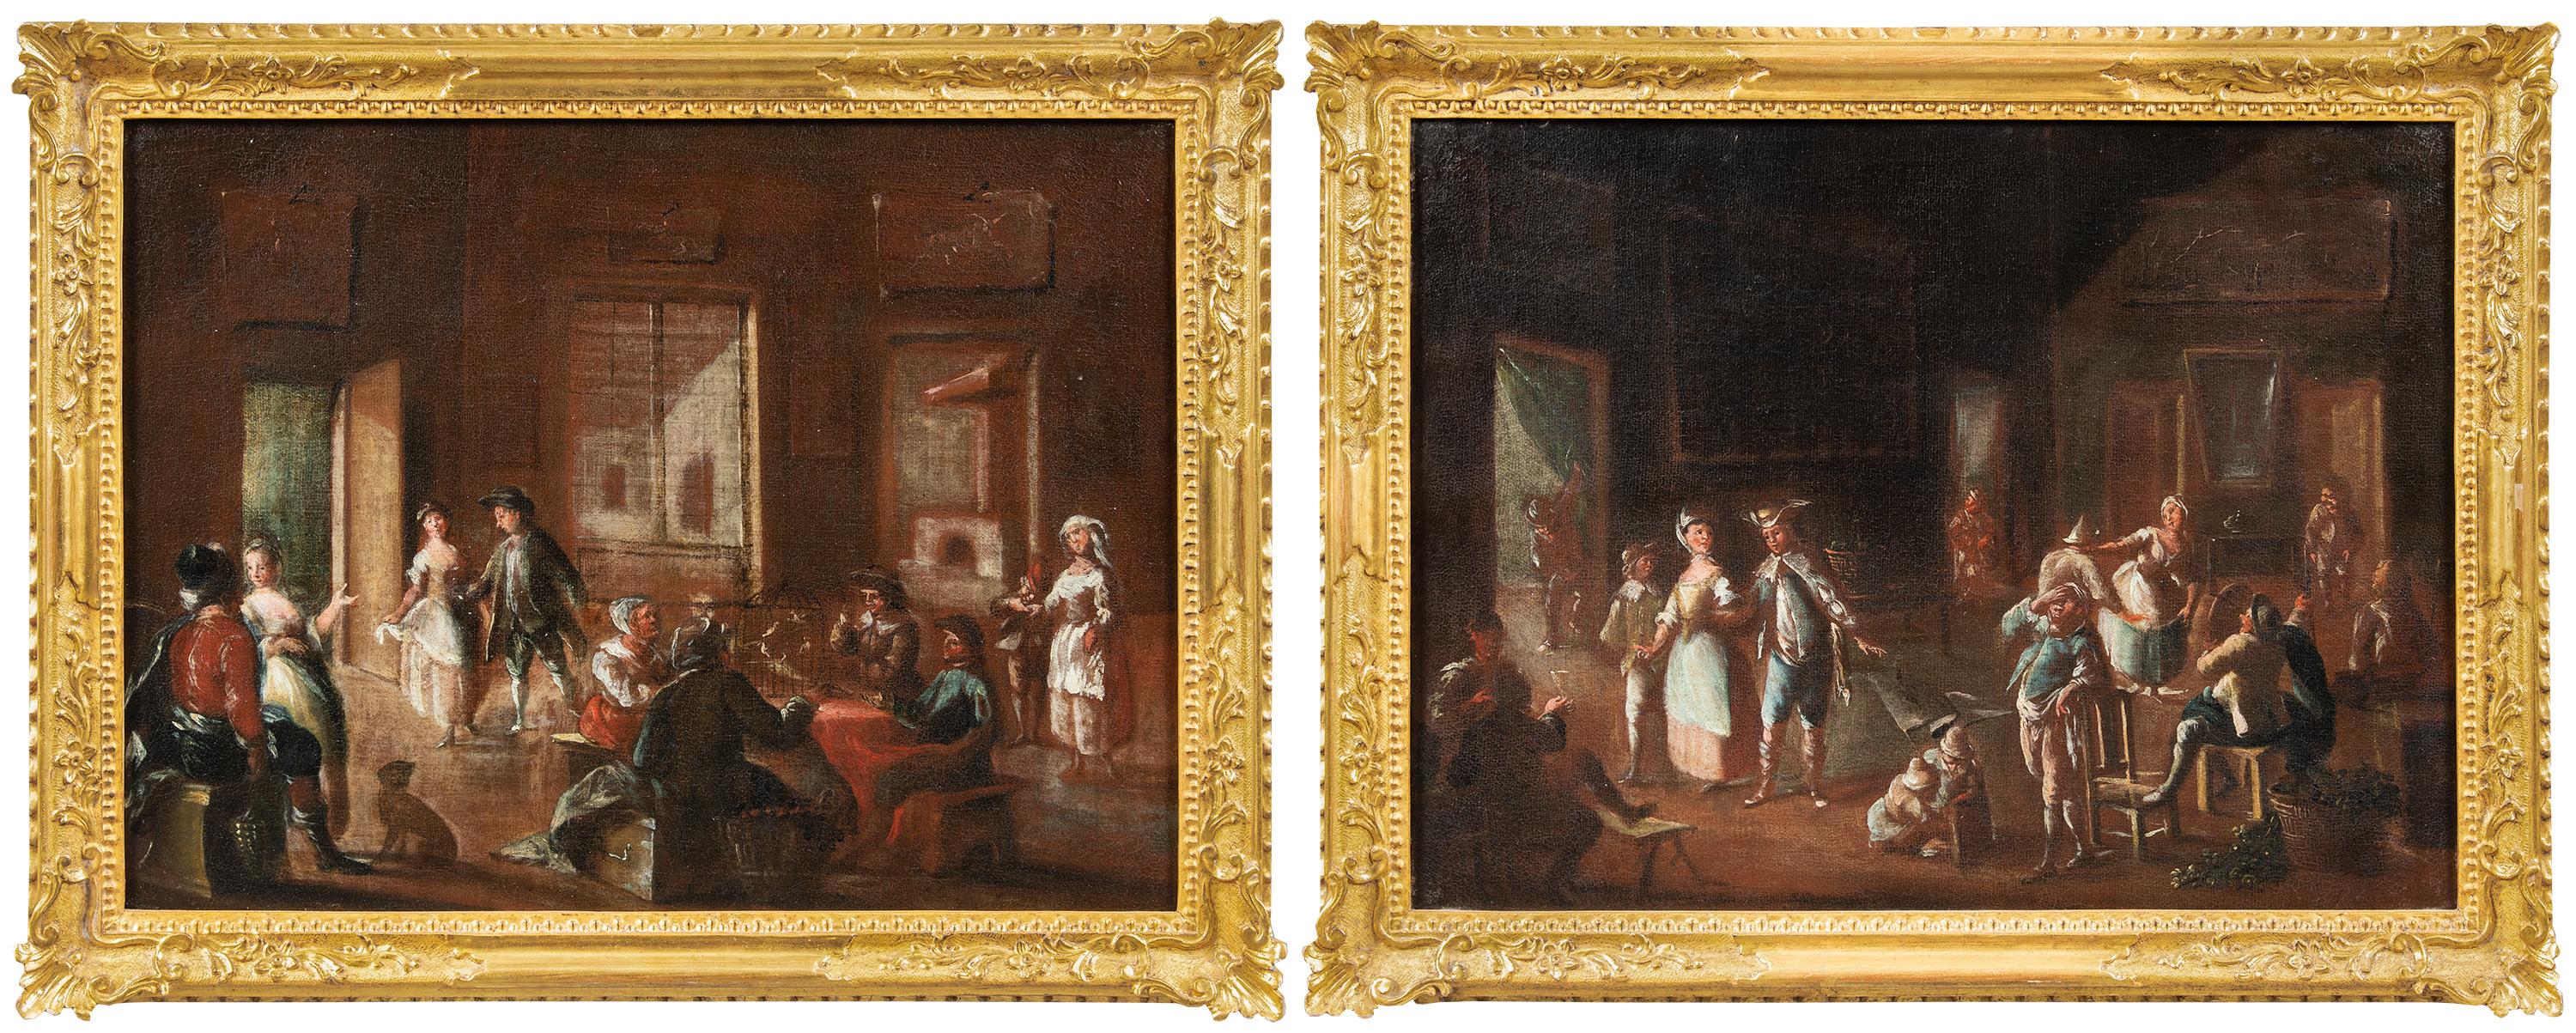 Lorenzo Gramiccia (Lorenzo 1702/1704 - Venise 1795) - Deux intérieurs vénitiens.

45 x 60 cm sans cadre, 55 x 70 cm avec cadre.

Paire de peintures à l'huile anciennes sur toile, dans des cadres en bois sculpté et doré. Le tableau peut être attribué